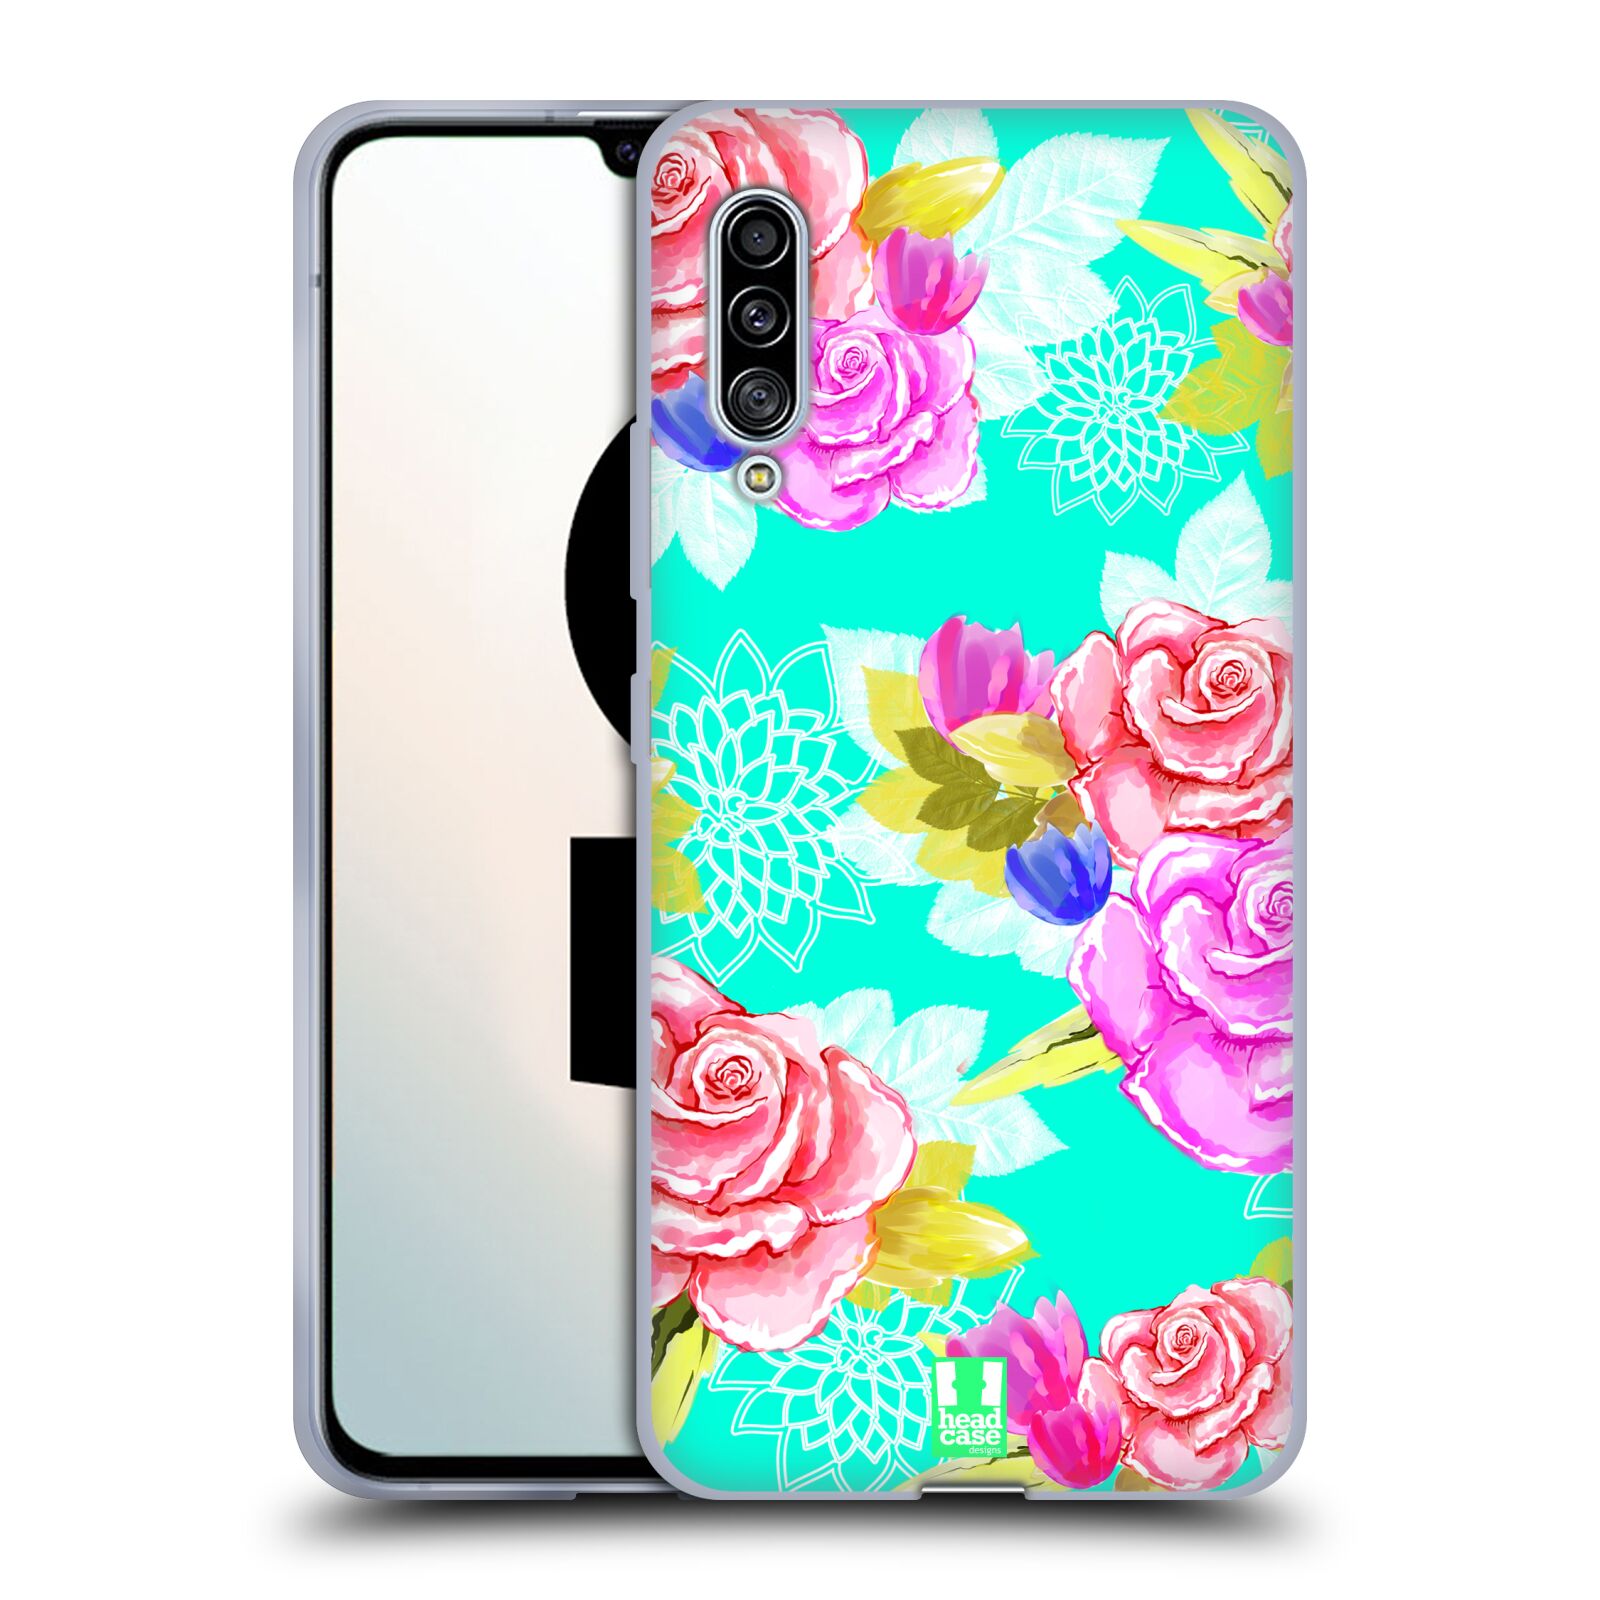 Plastový obal HEAD CASE na mobil Samsung Galaxy A90 5G vzor Malované květiny barevné AQUA MODRÁ